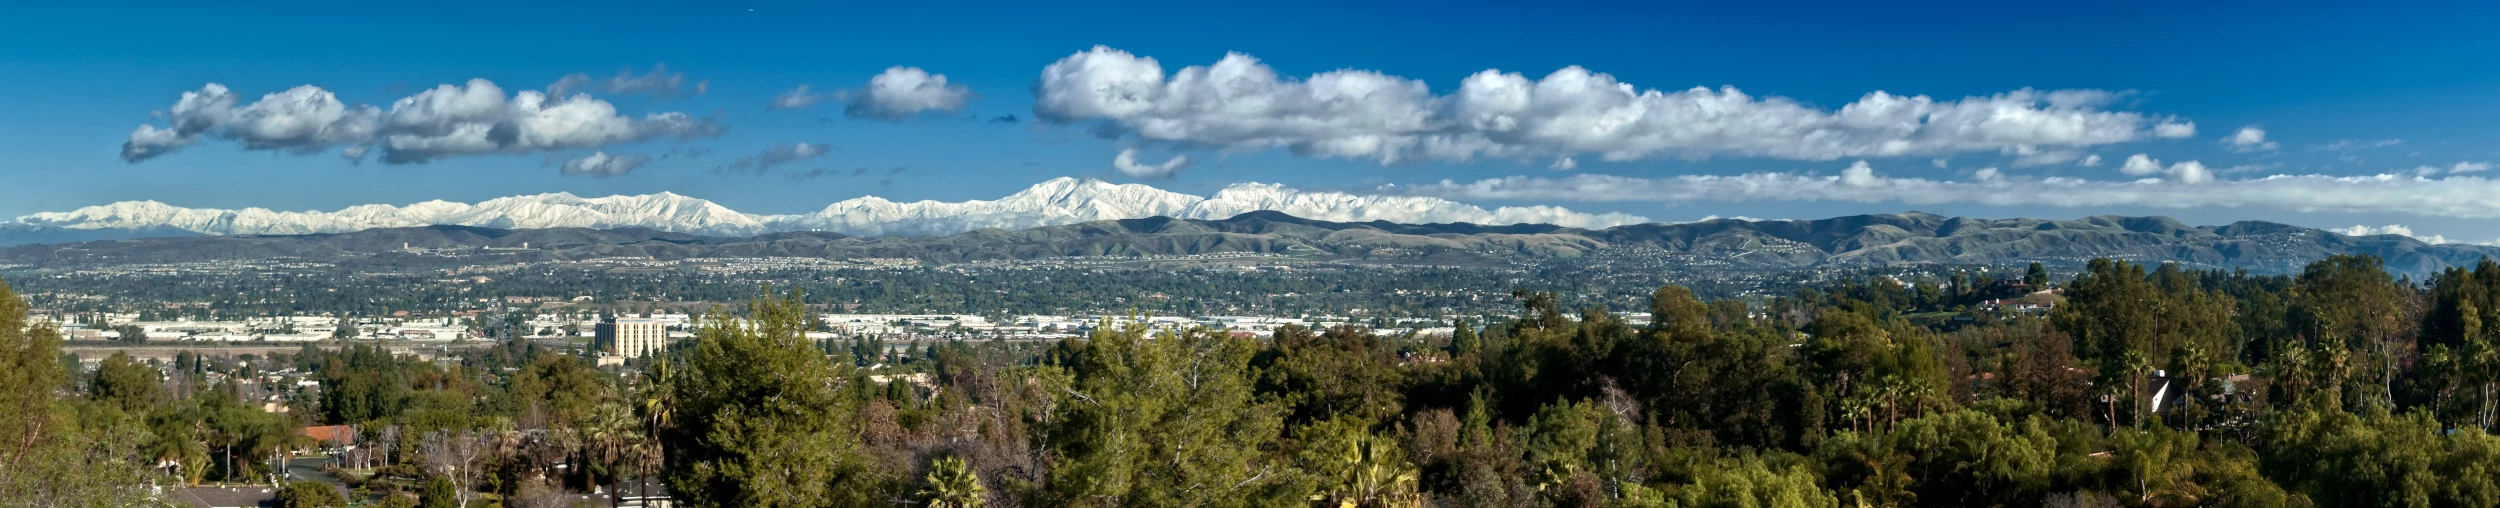 Panorama of Anaheim Hills from Wikipedia